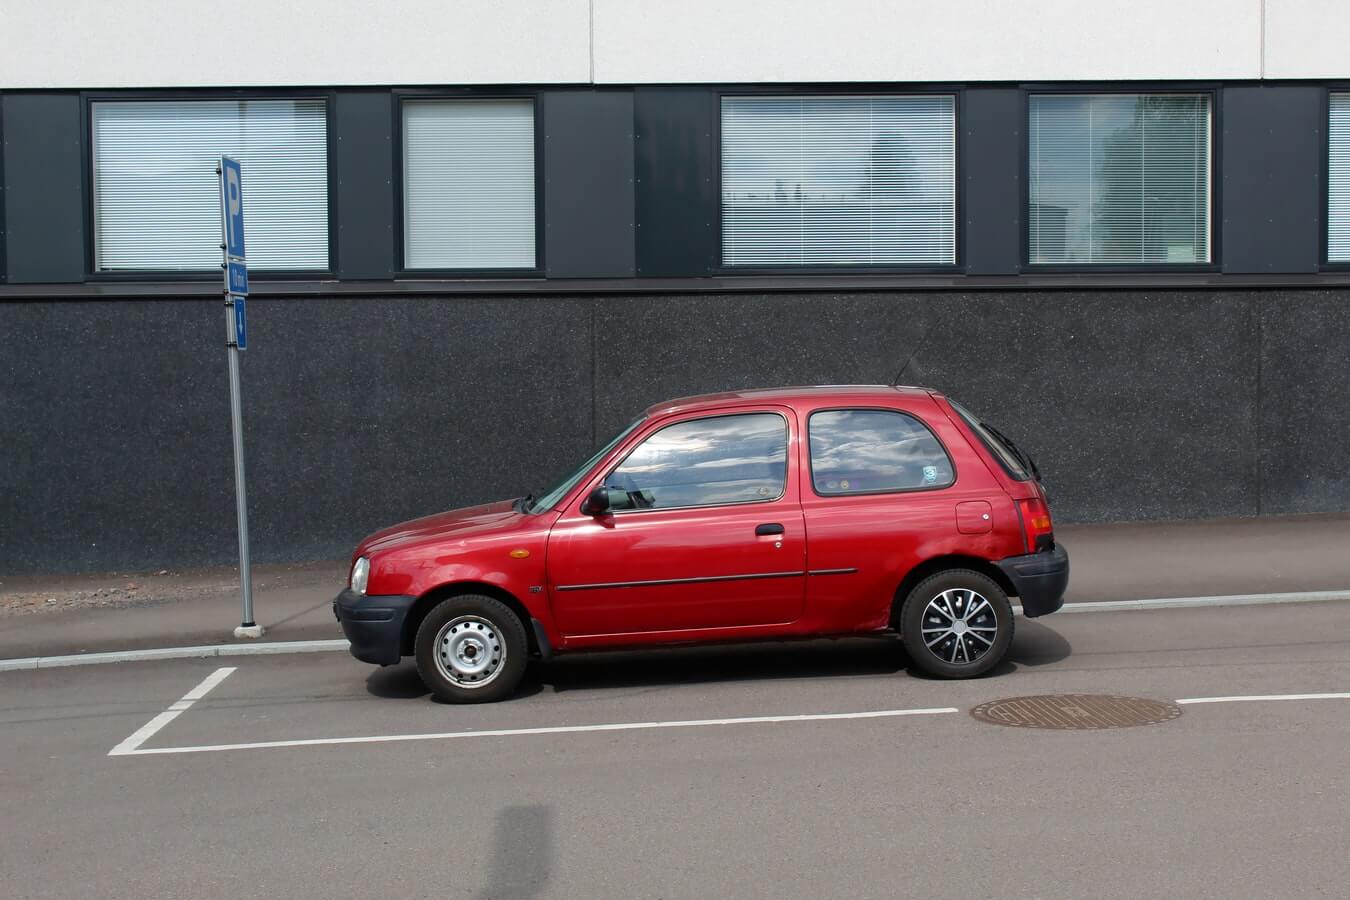 Imagem de um automóvel com seu freio de mão funcionando corretamente para estacionar